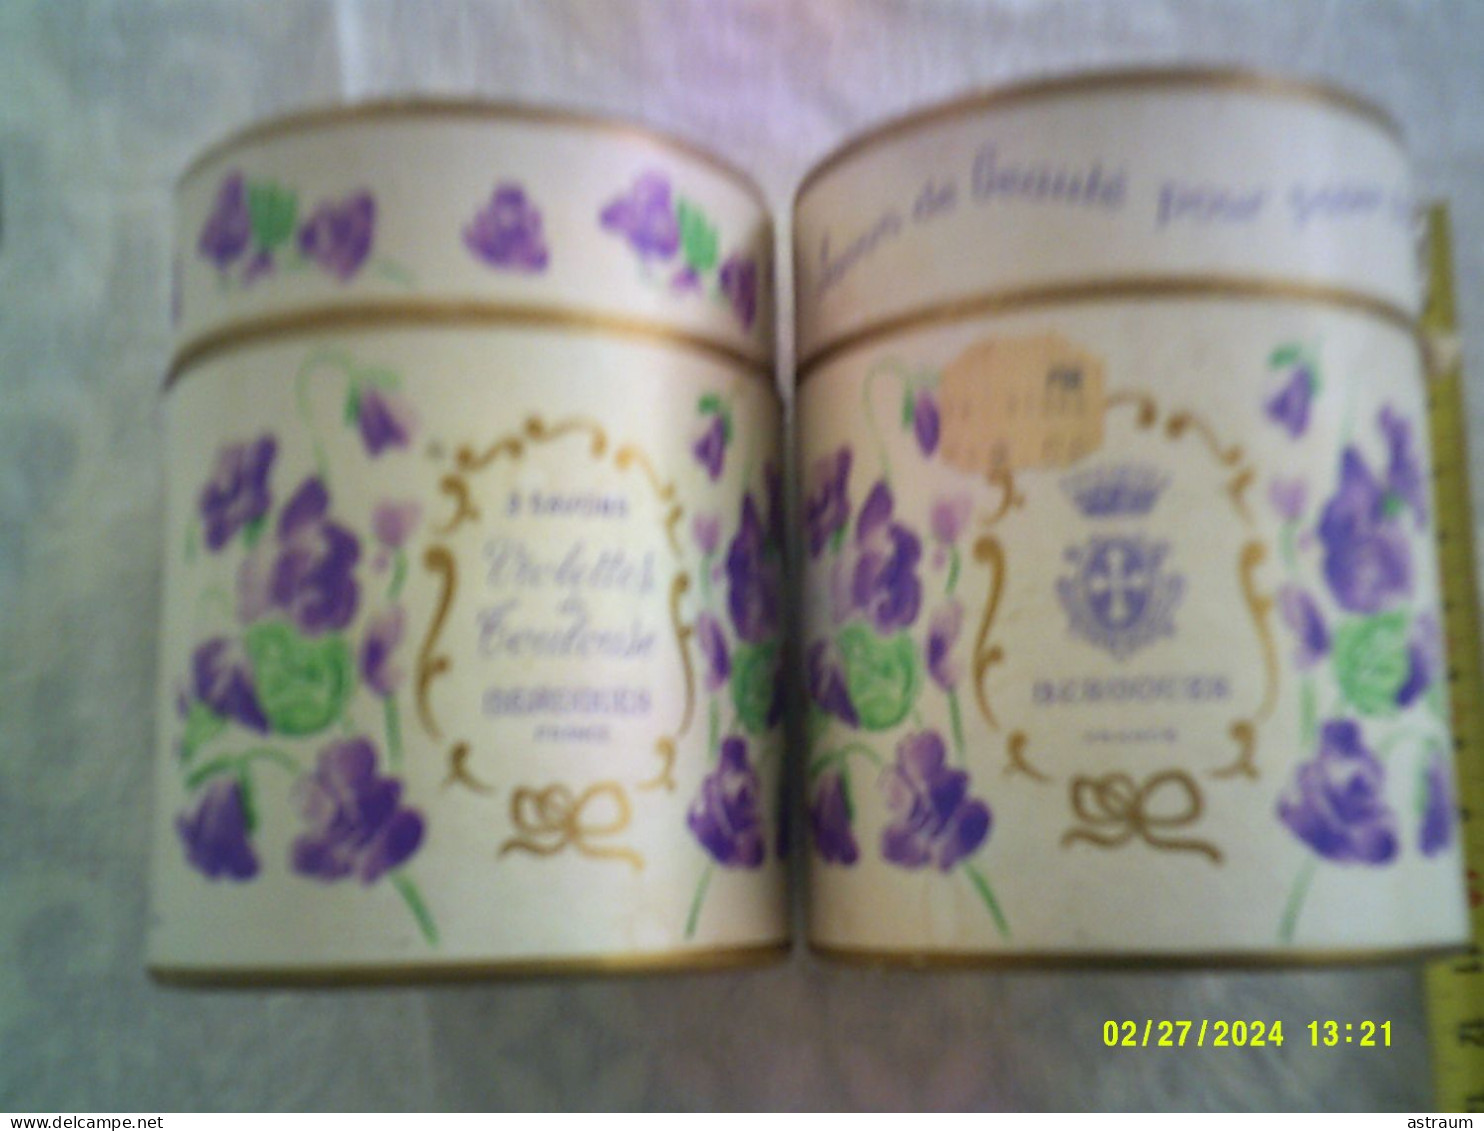 2 Coffret Vintage Parfum - Berdoues - Violettes De Toulouse - 80ml + 1 Boite Avec 1 Savon - Miniaturen Flesjes Dame (met Doos)